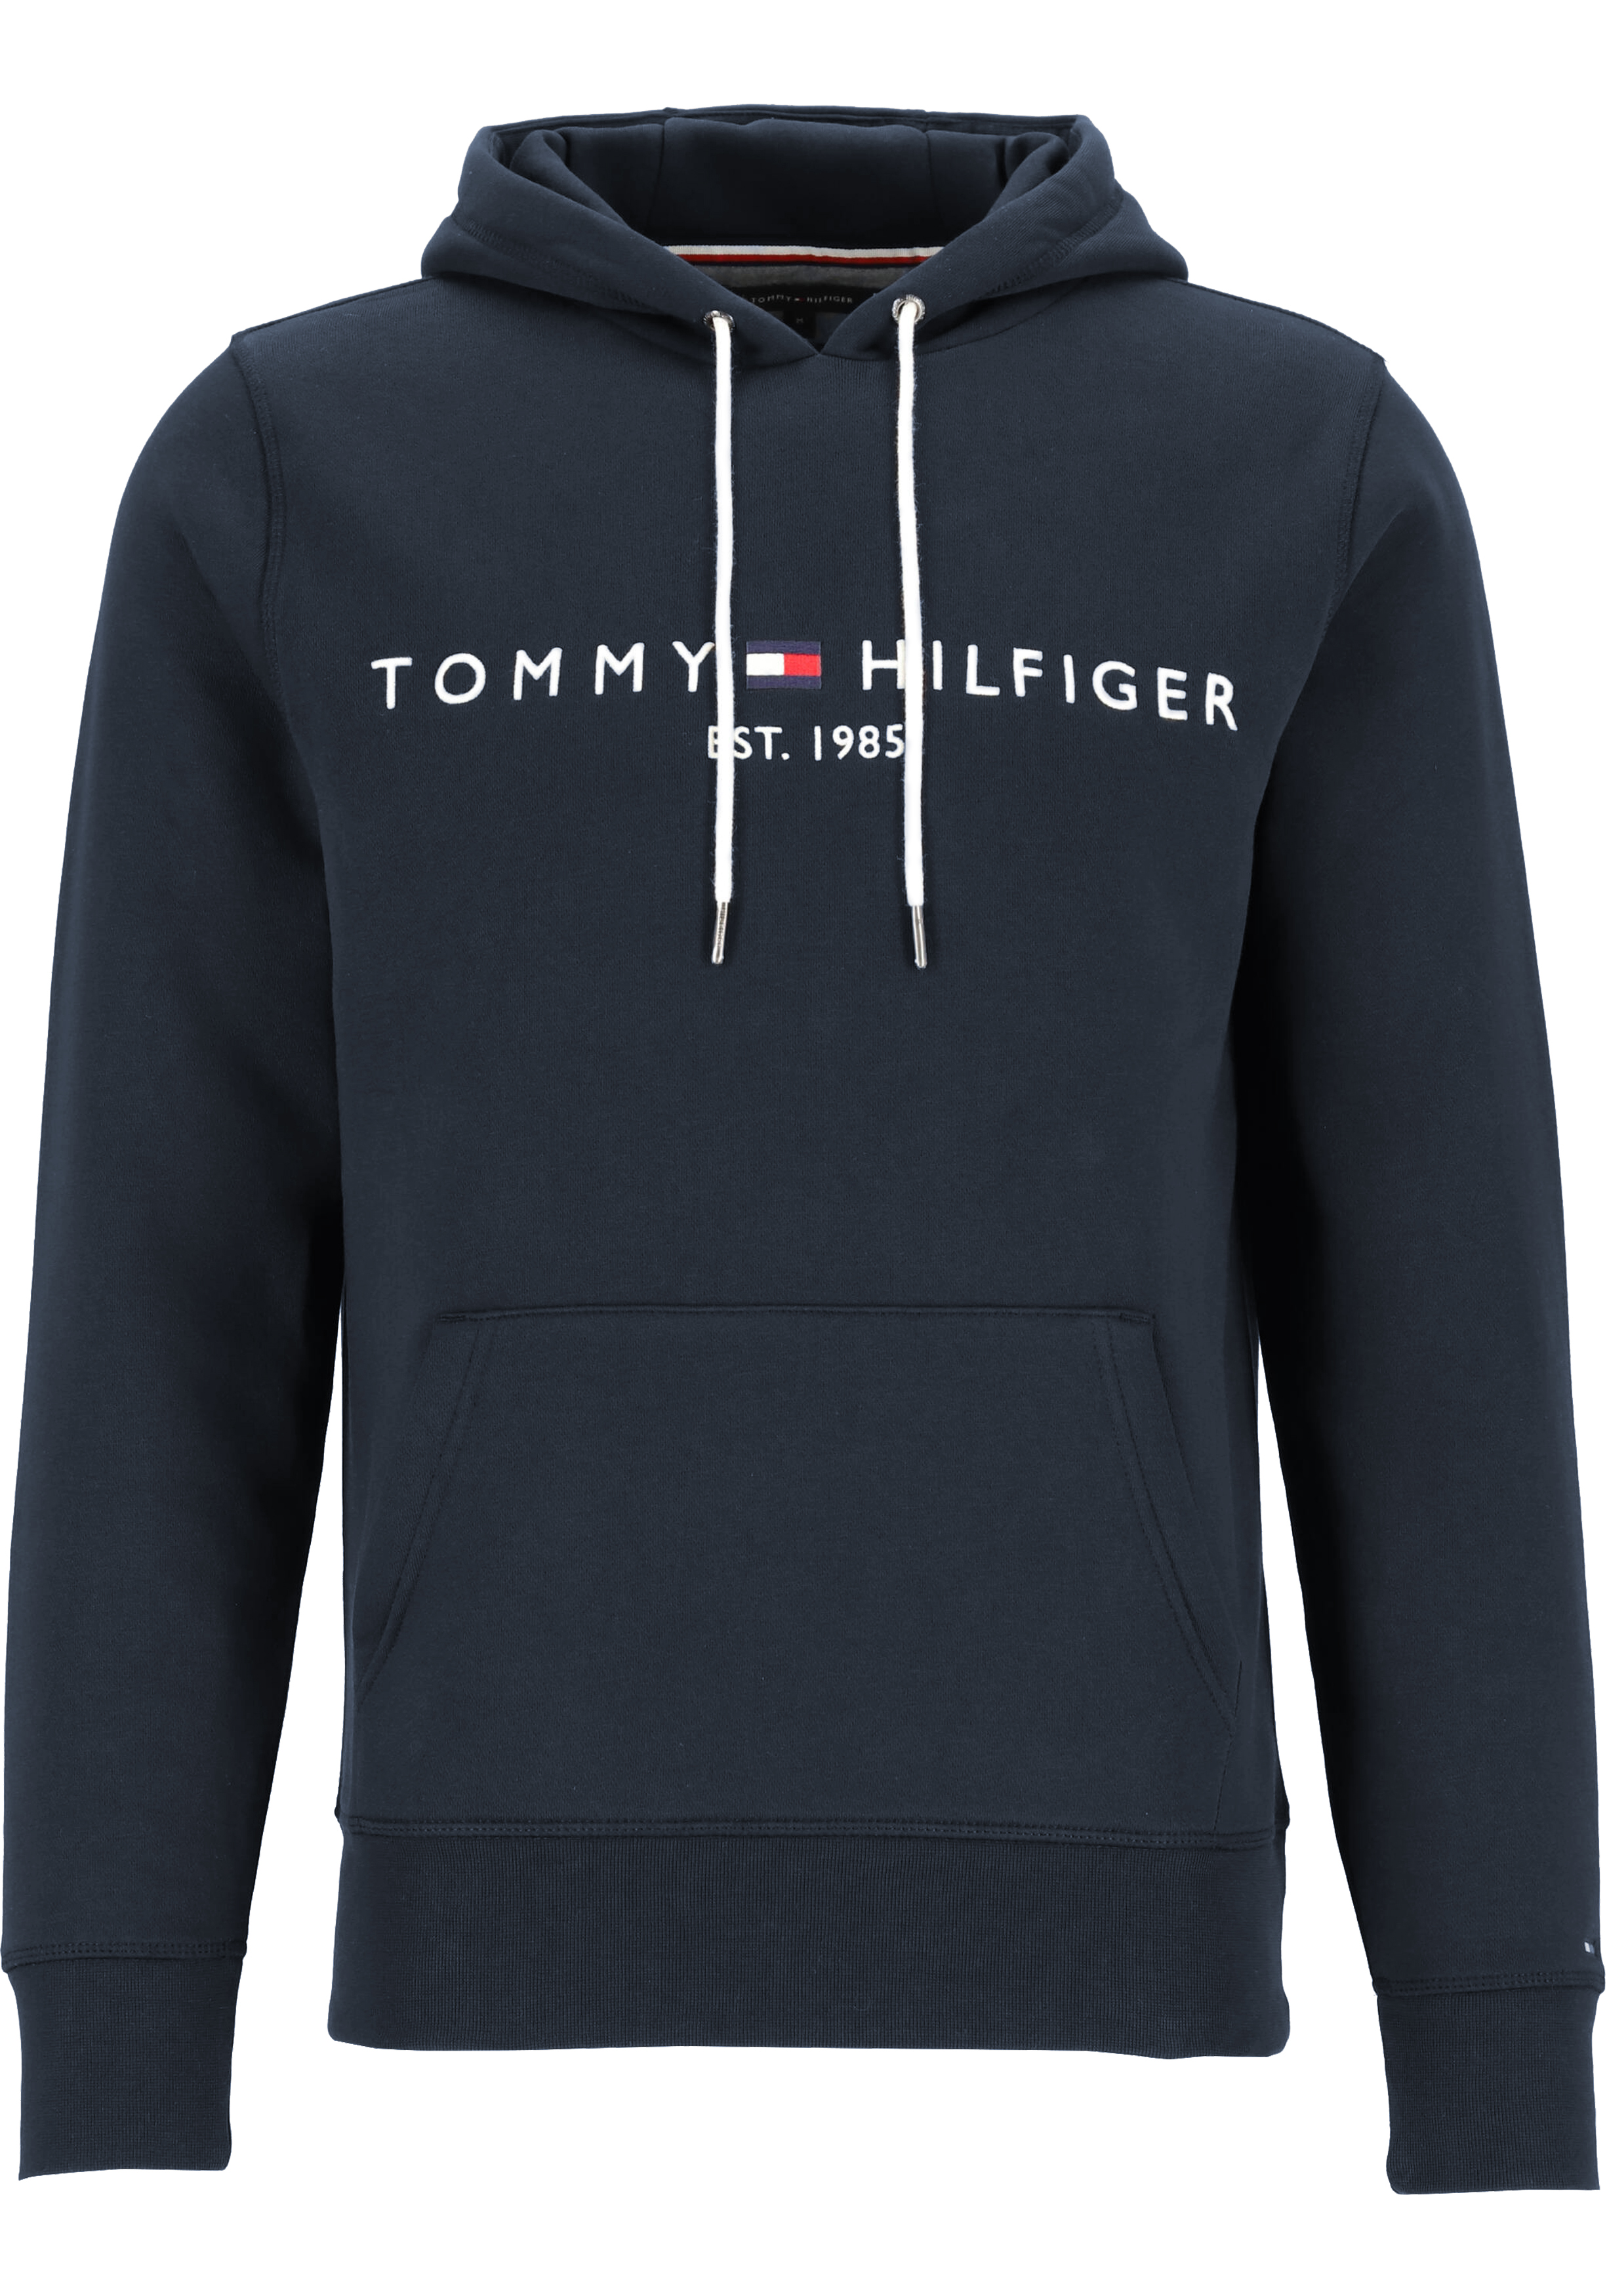 Hulpeloosheid schors halfrond Tommy Hilfiger Core Tommy logo hoody, regular fit heren sweathoodie,... -  Shop de nieuwste voorjaarsmode